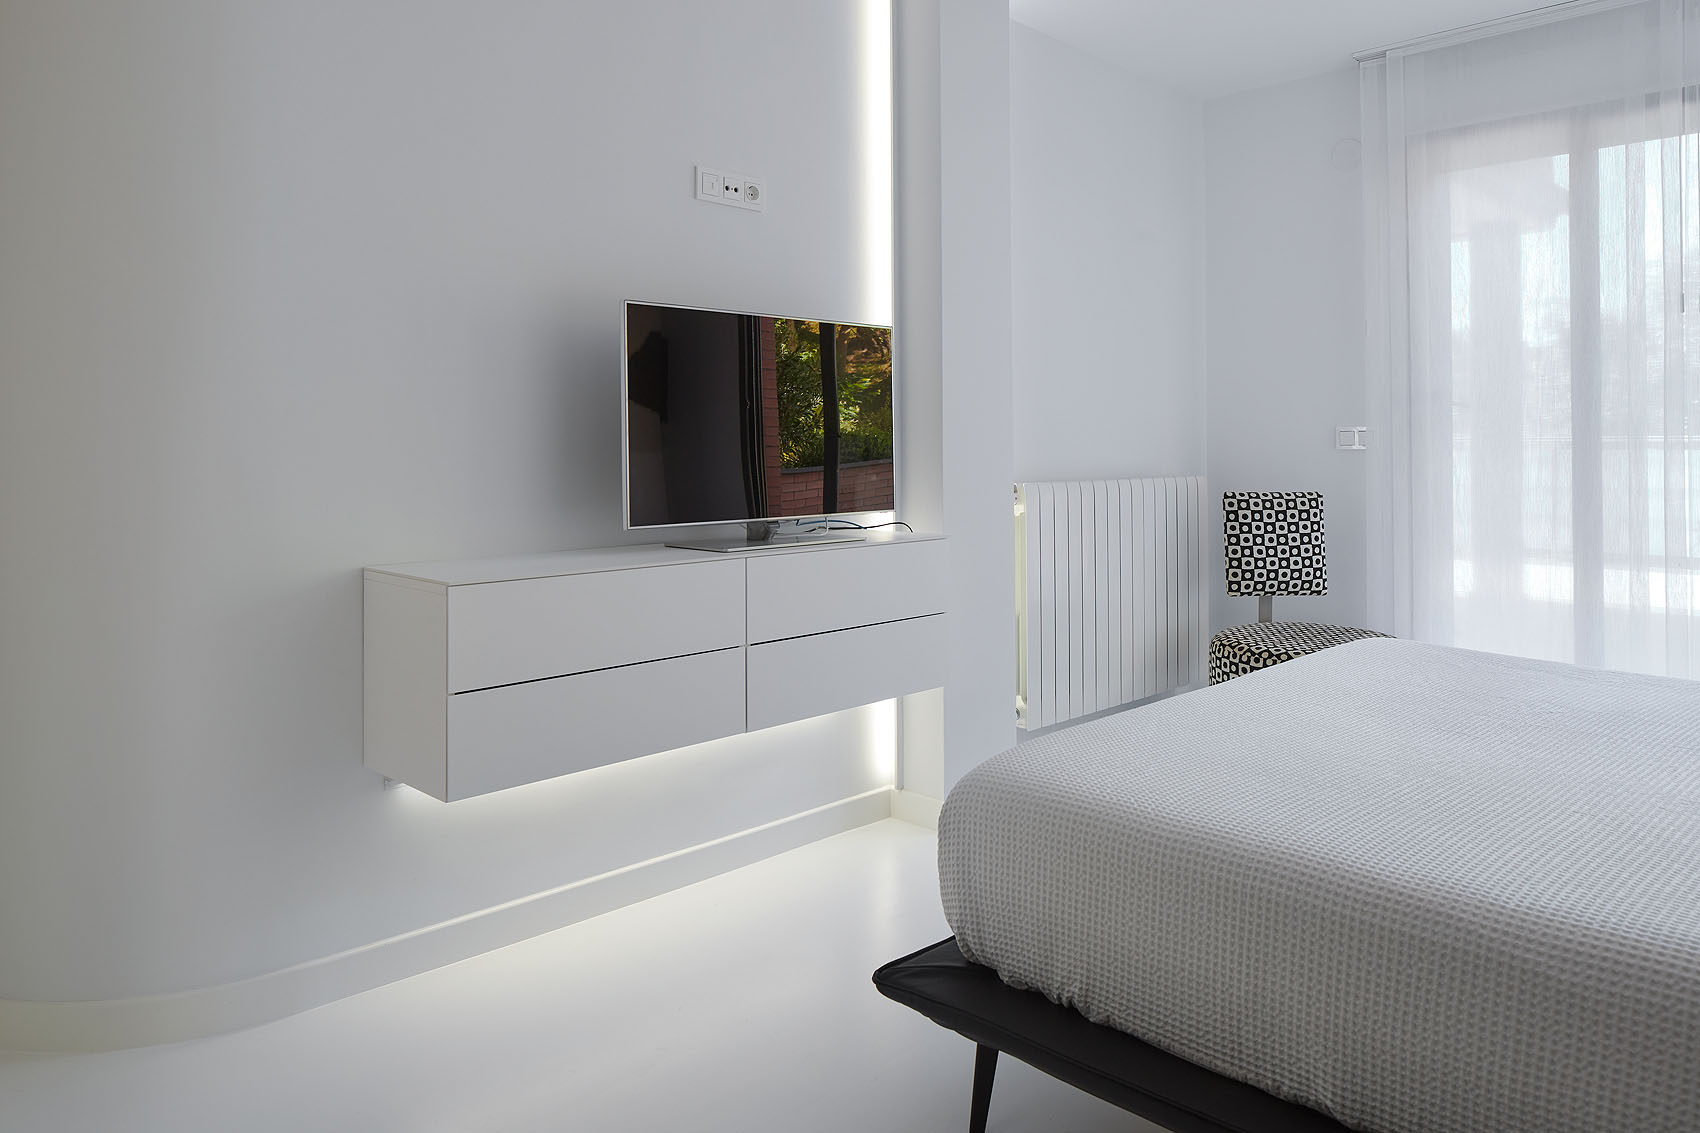 Dormitorio y vestidor en Donostia - Iñaki Caperochipi - Fotografía